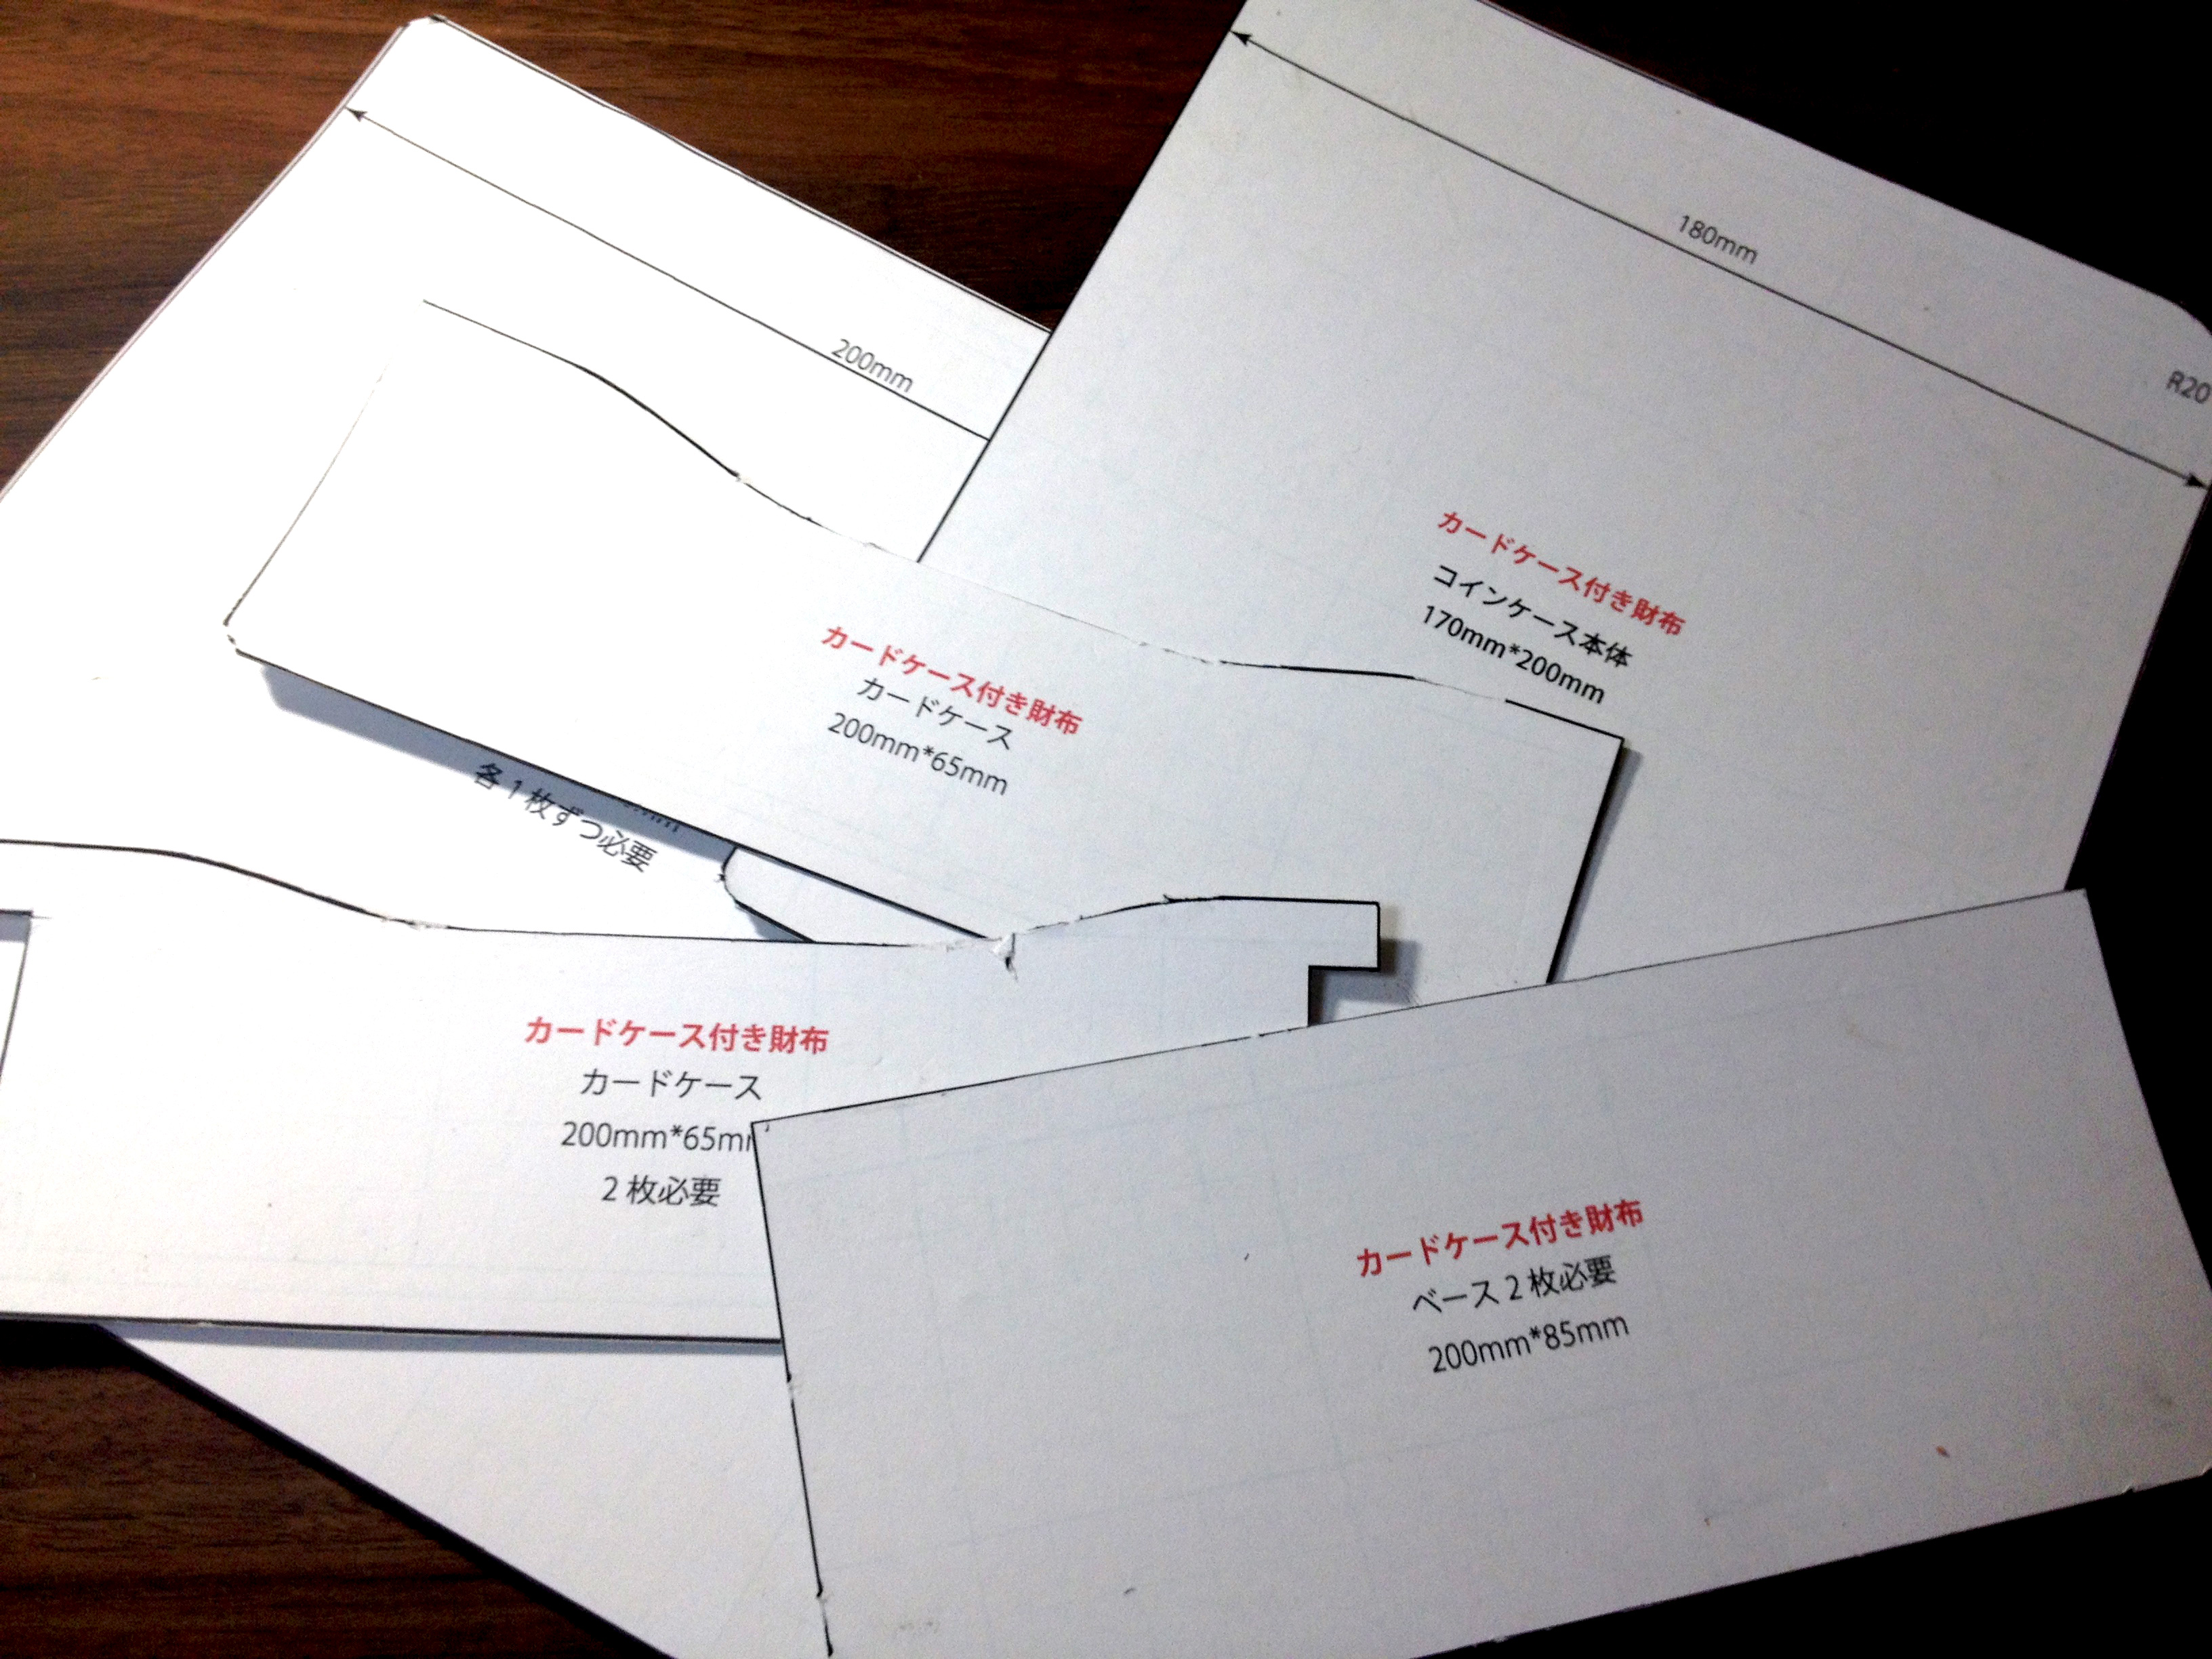 2つ折り長財布の作り方を公開 型紙 設計 初心者のレザークラフト